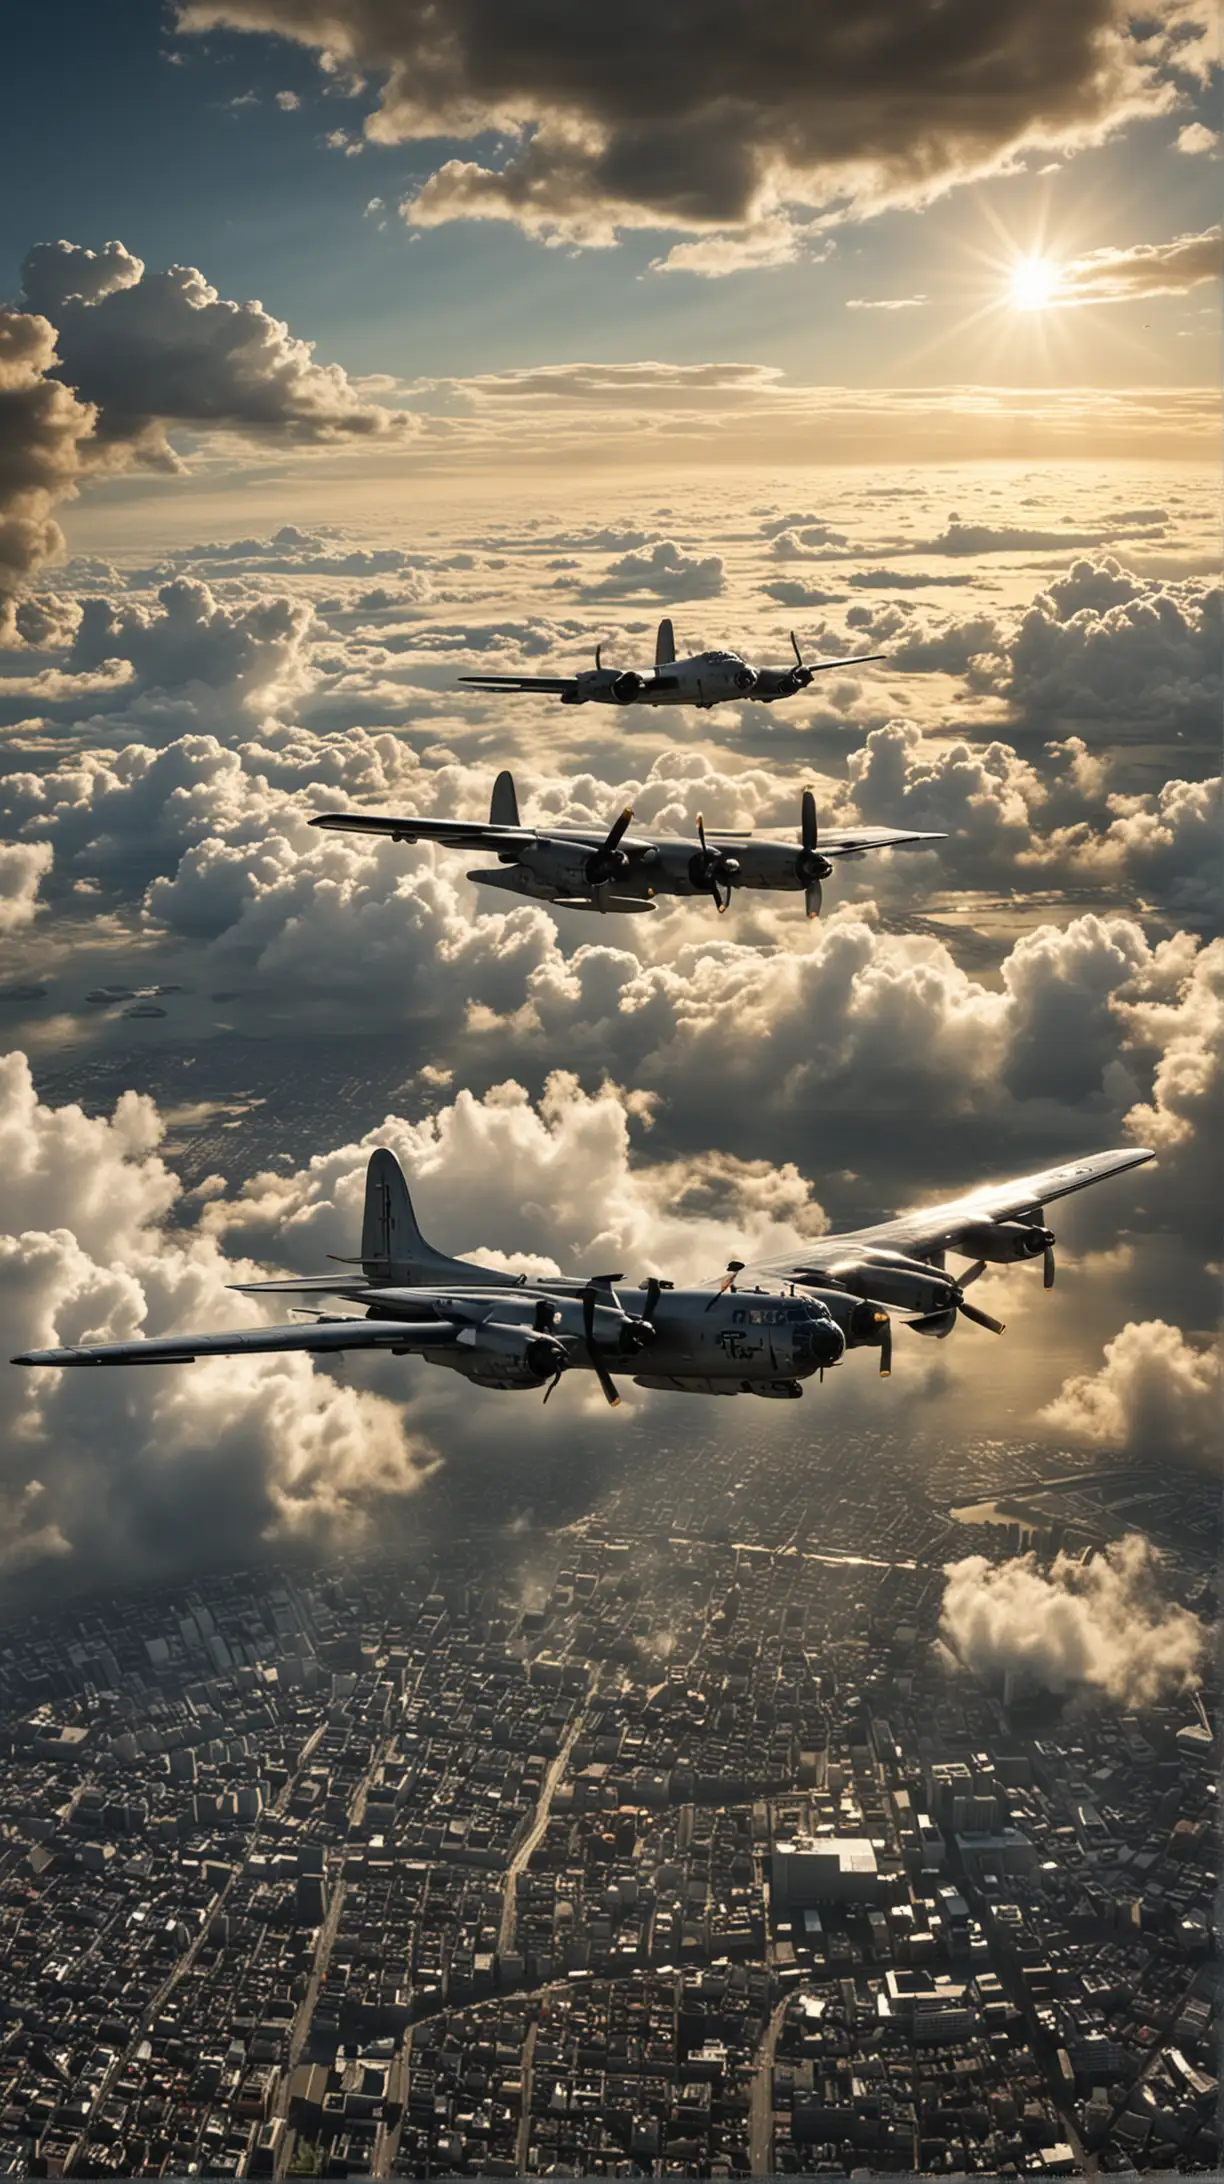 B29 Bomber Enola Gay Approaching Hiroshima at Dawn